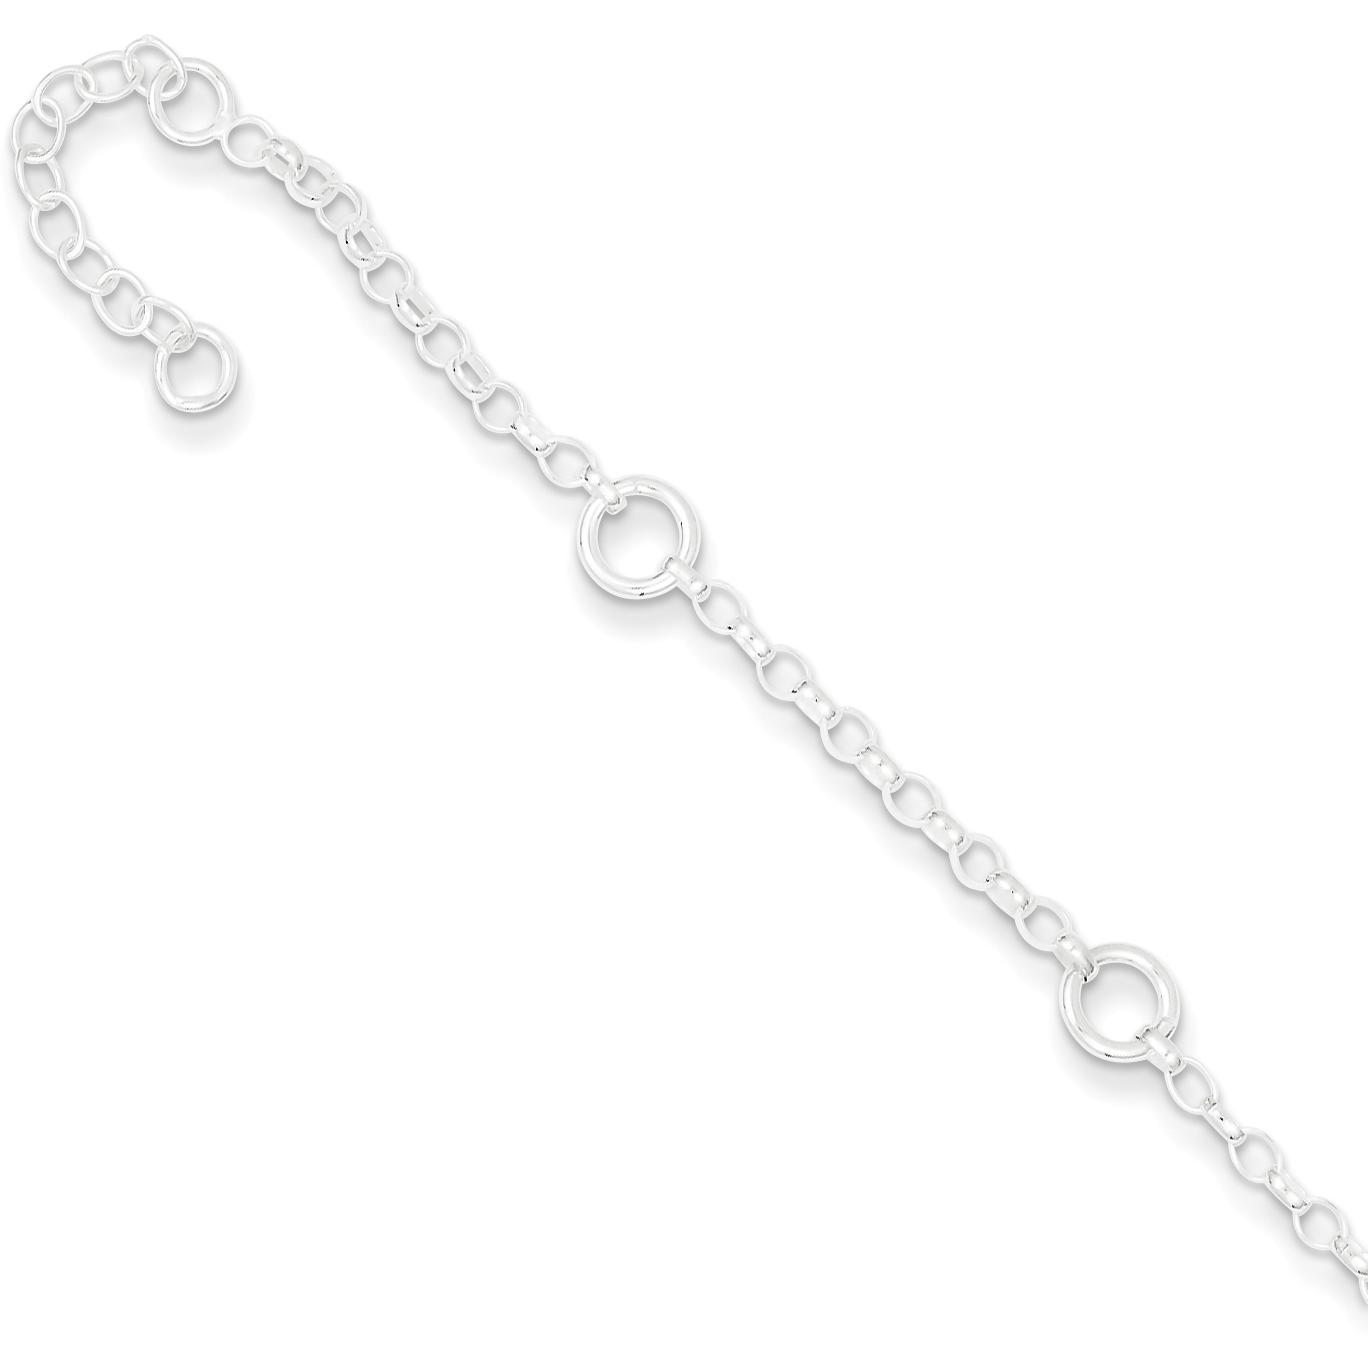 Findingking Sterling Silver Rolo Link Bracelet 6"